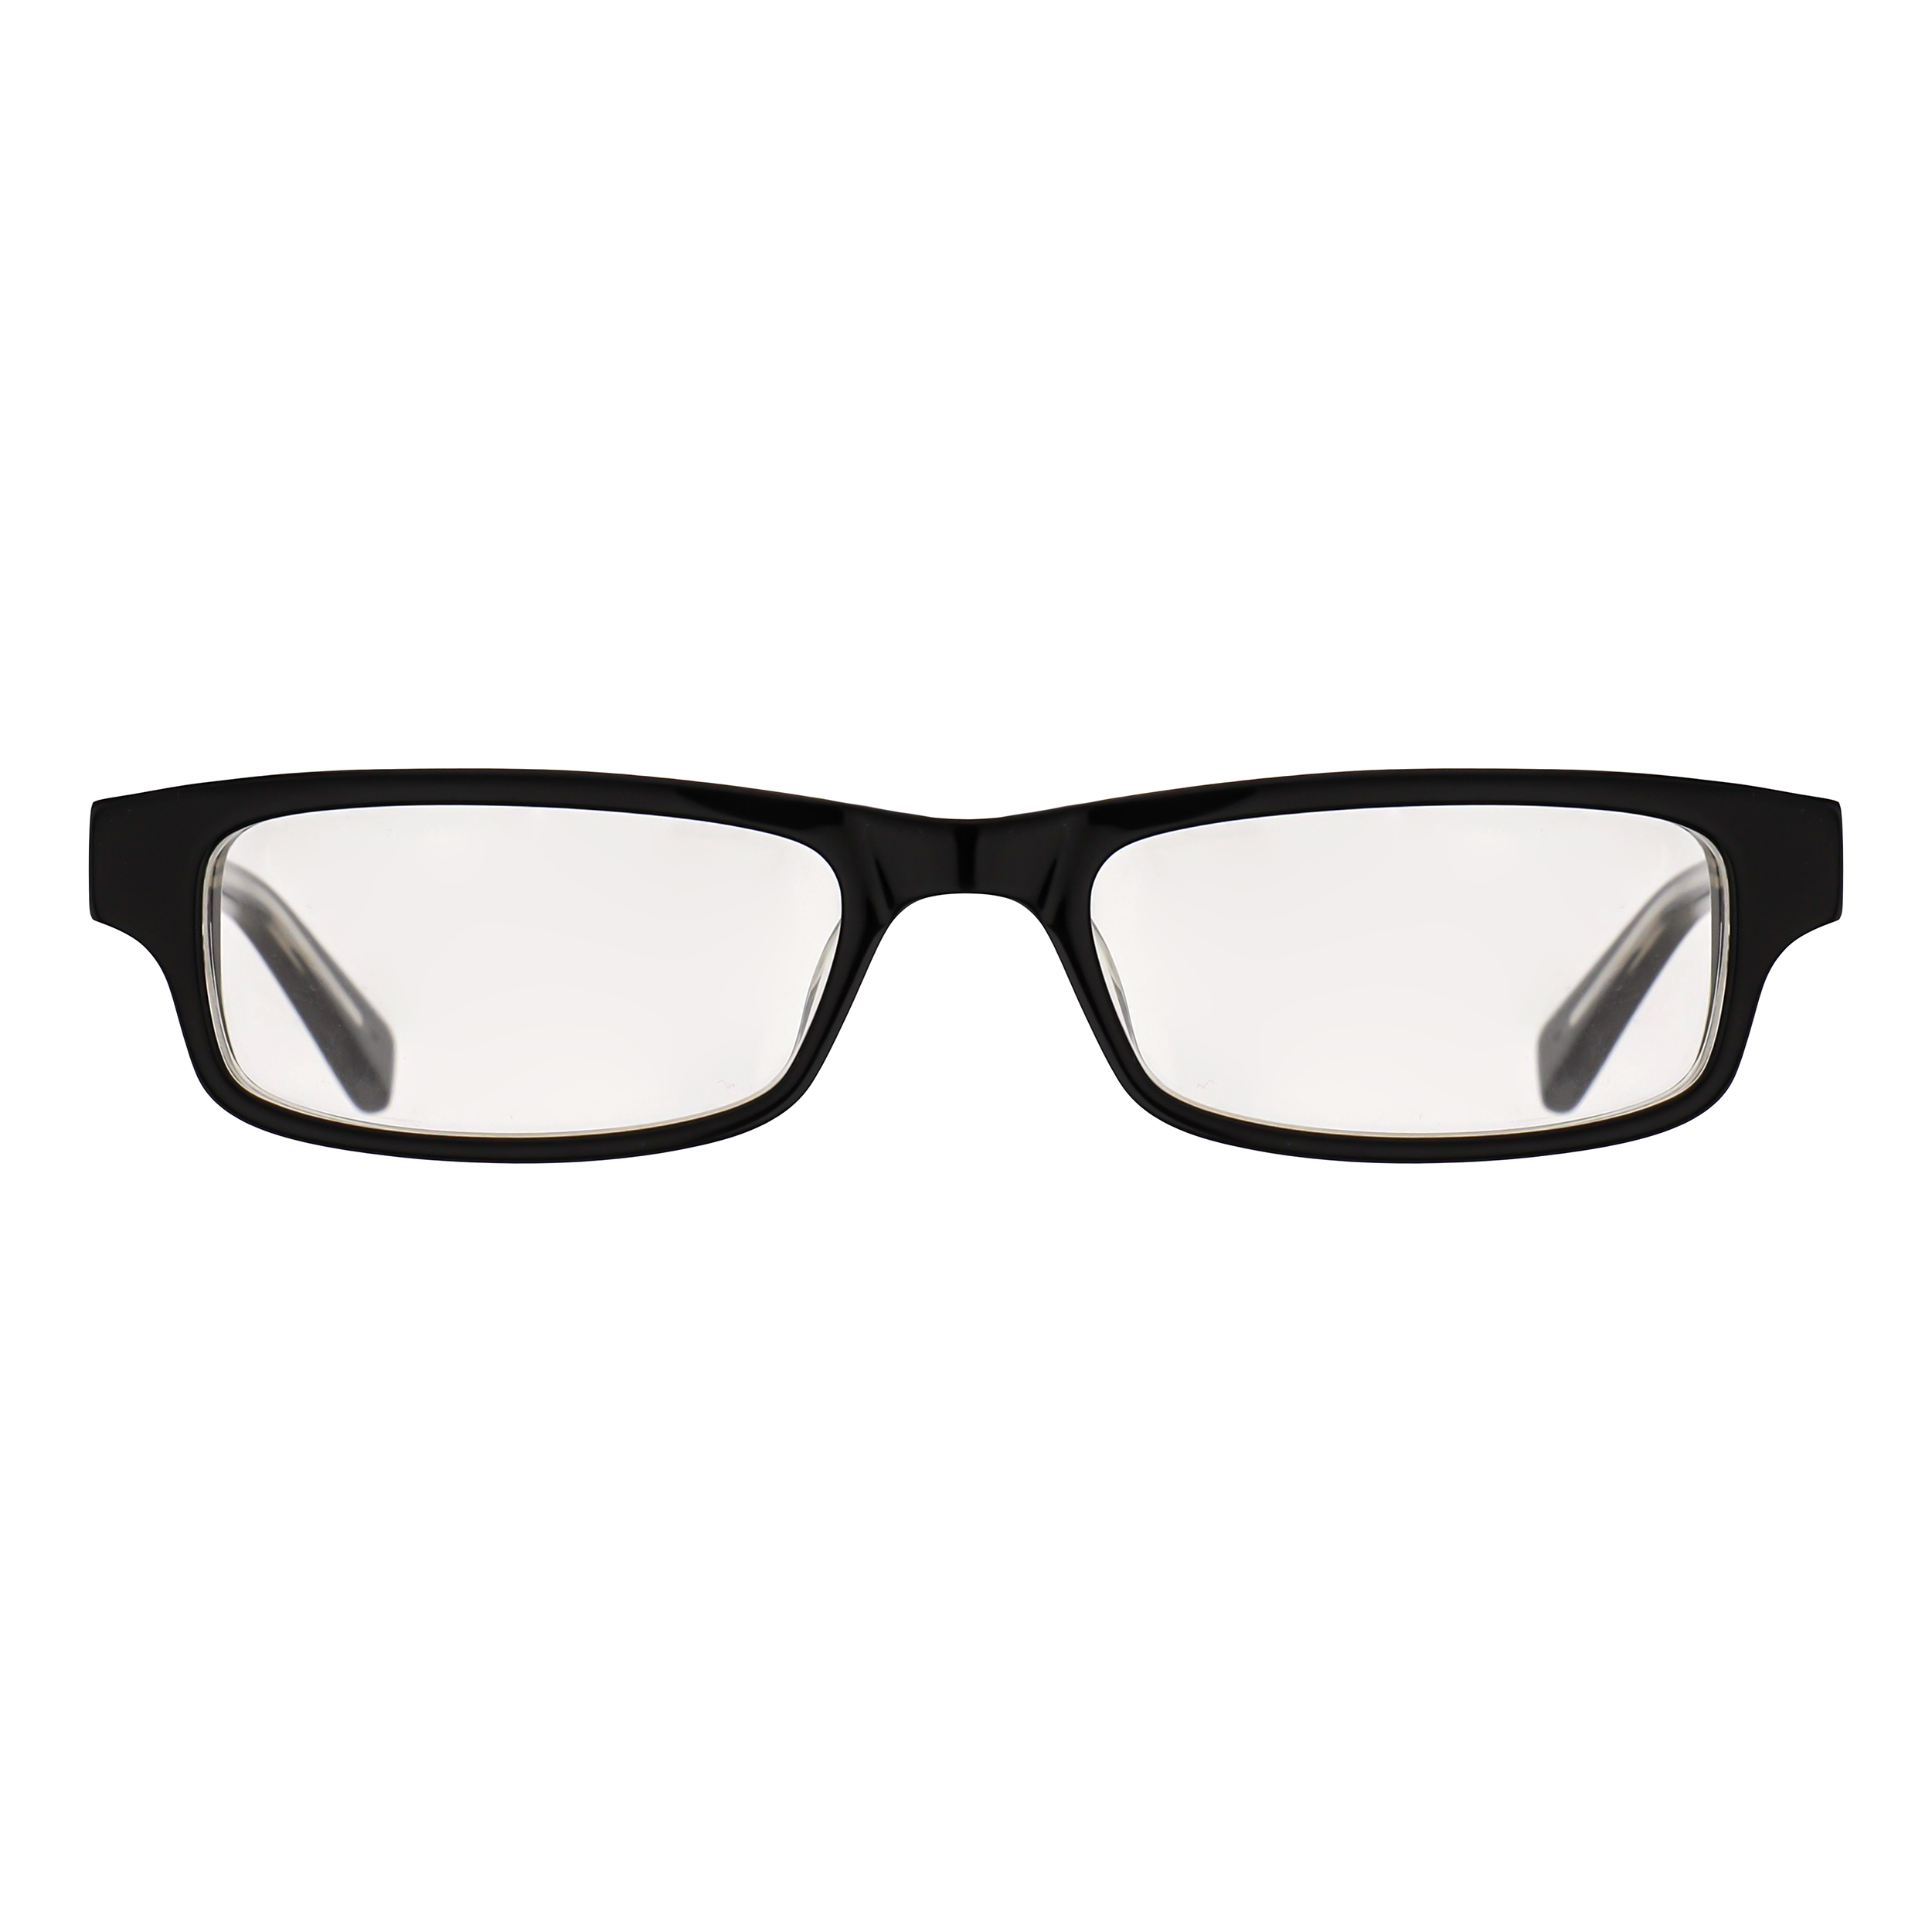 فریم عینک طبی نایکی مدل 5517-1